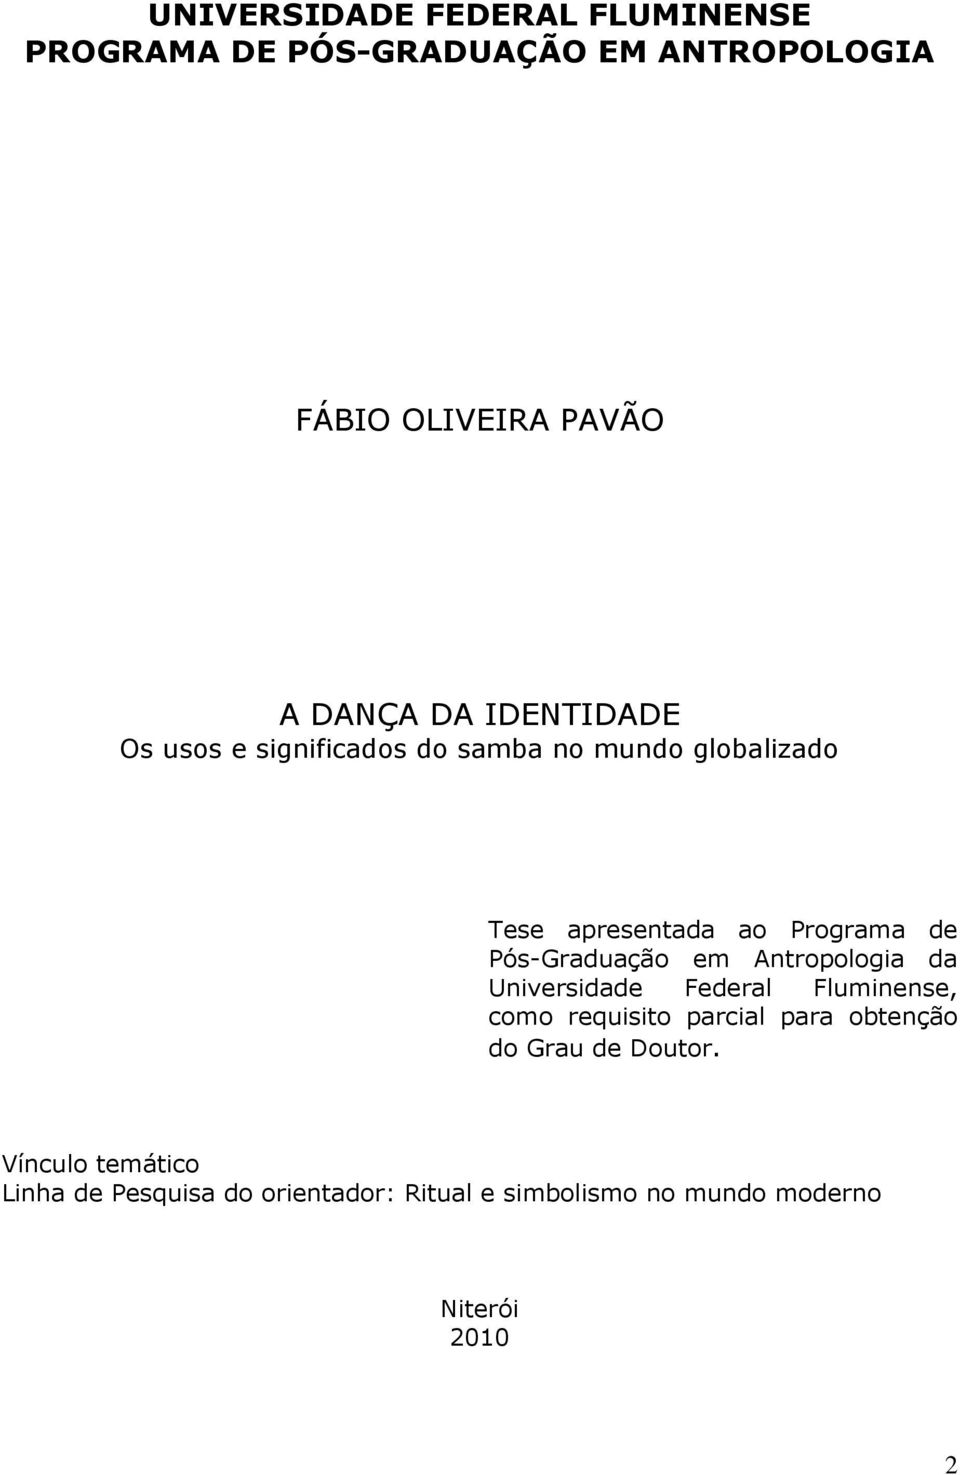 Pós-Graduação em Antropologia da Universidade Federal Fluminense, como requisito parcial para obtenção do